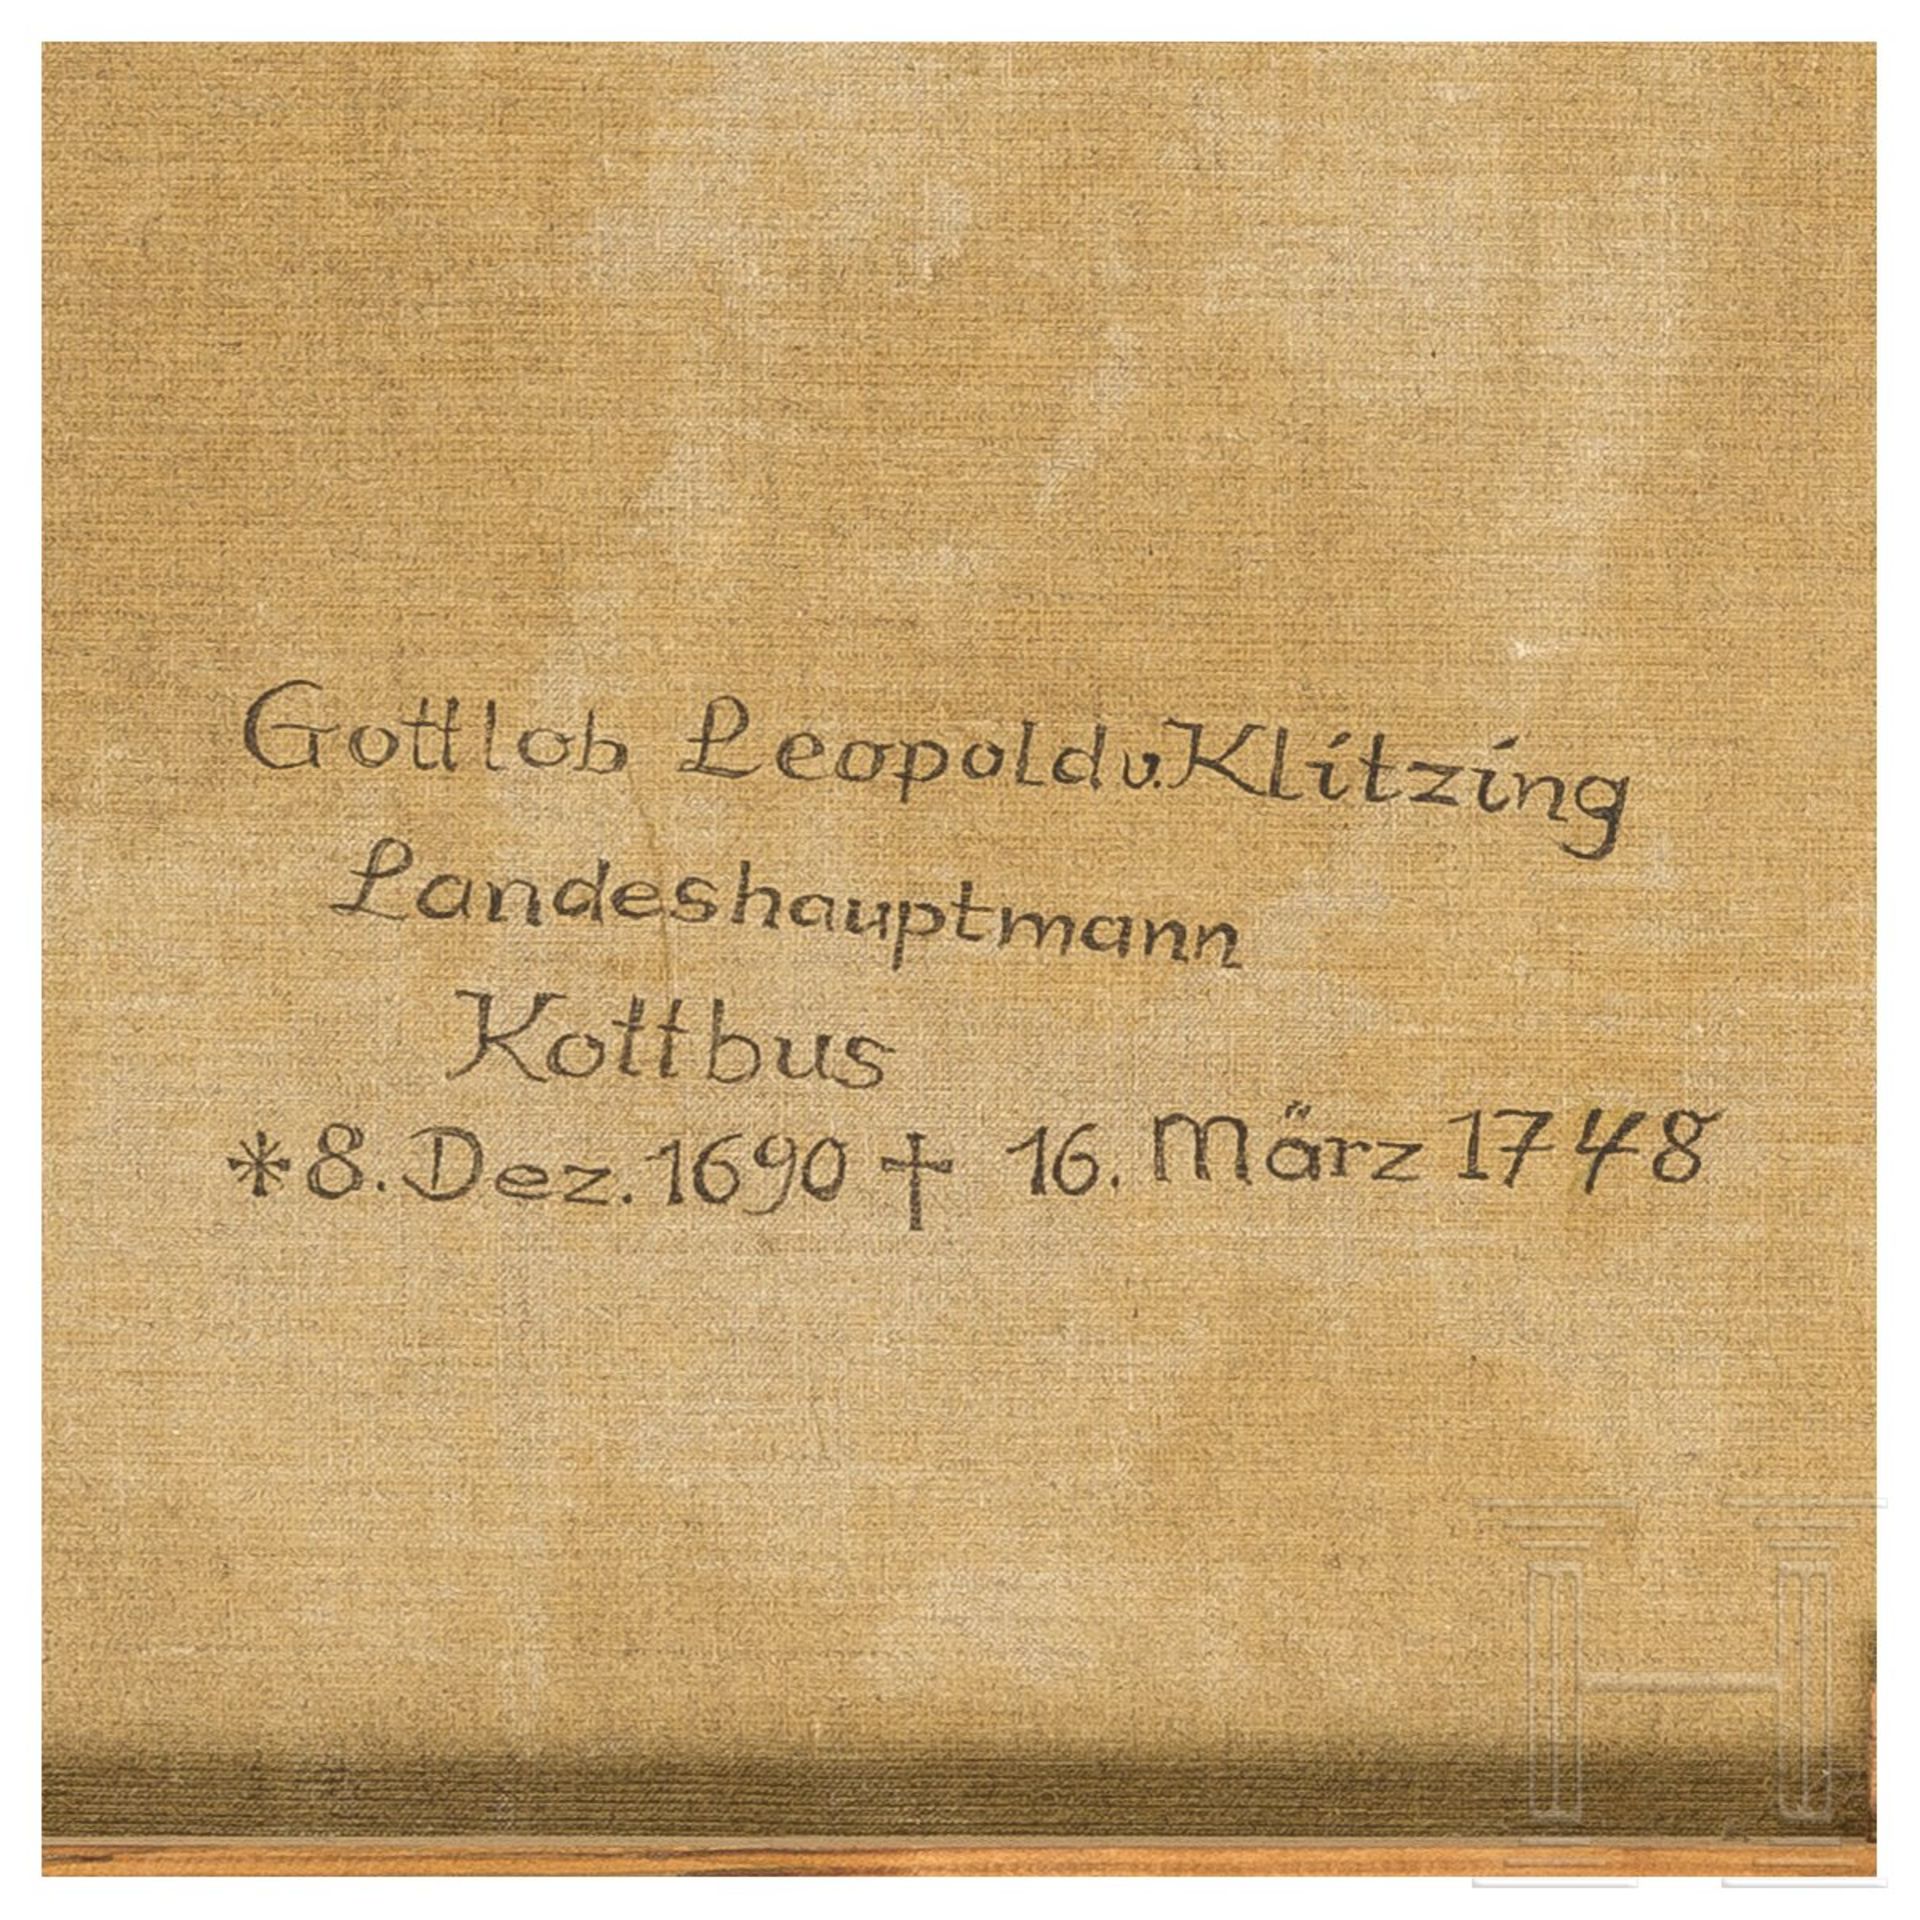 Gottlob Leopold von Klitzing (1690 - 1748) - Portrait des Landeshauptmannes von Cottbus, um 1730 - Image 7 of 7